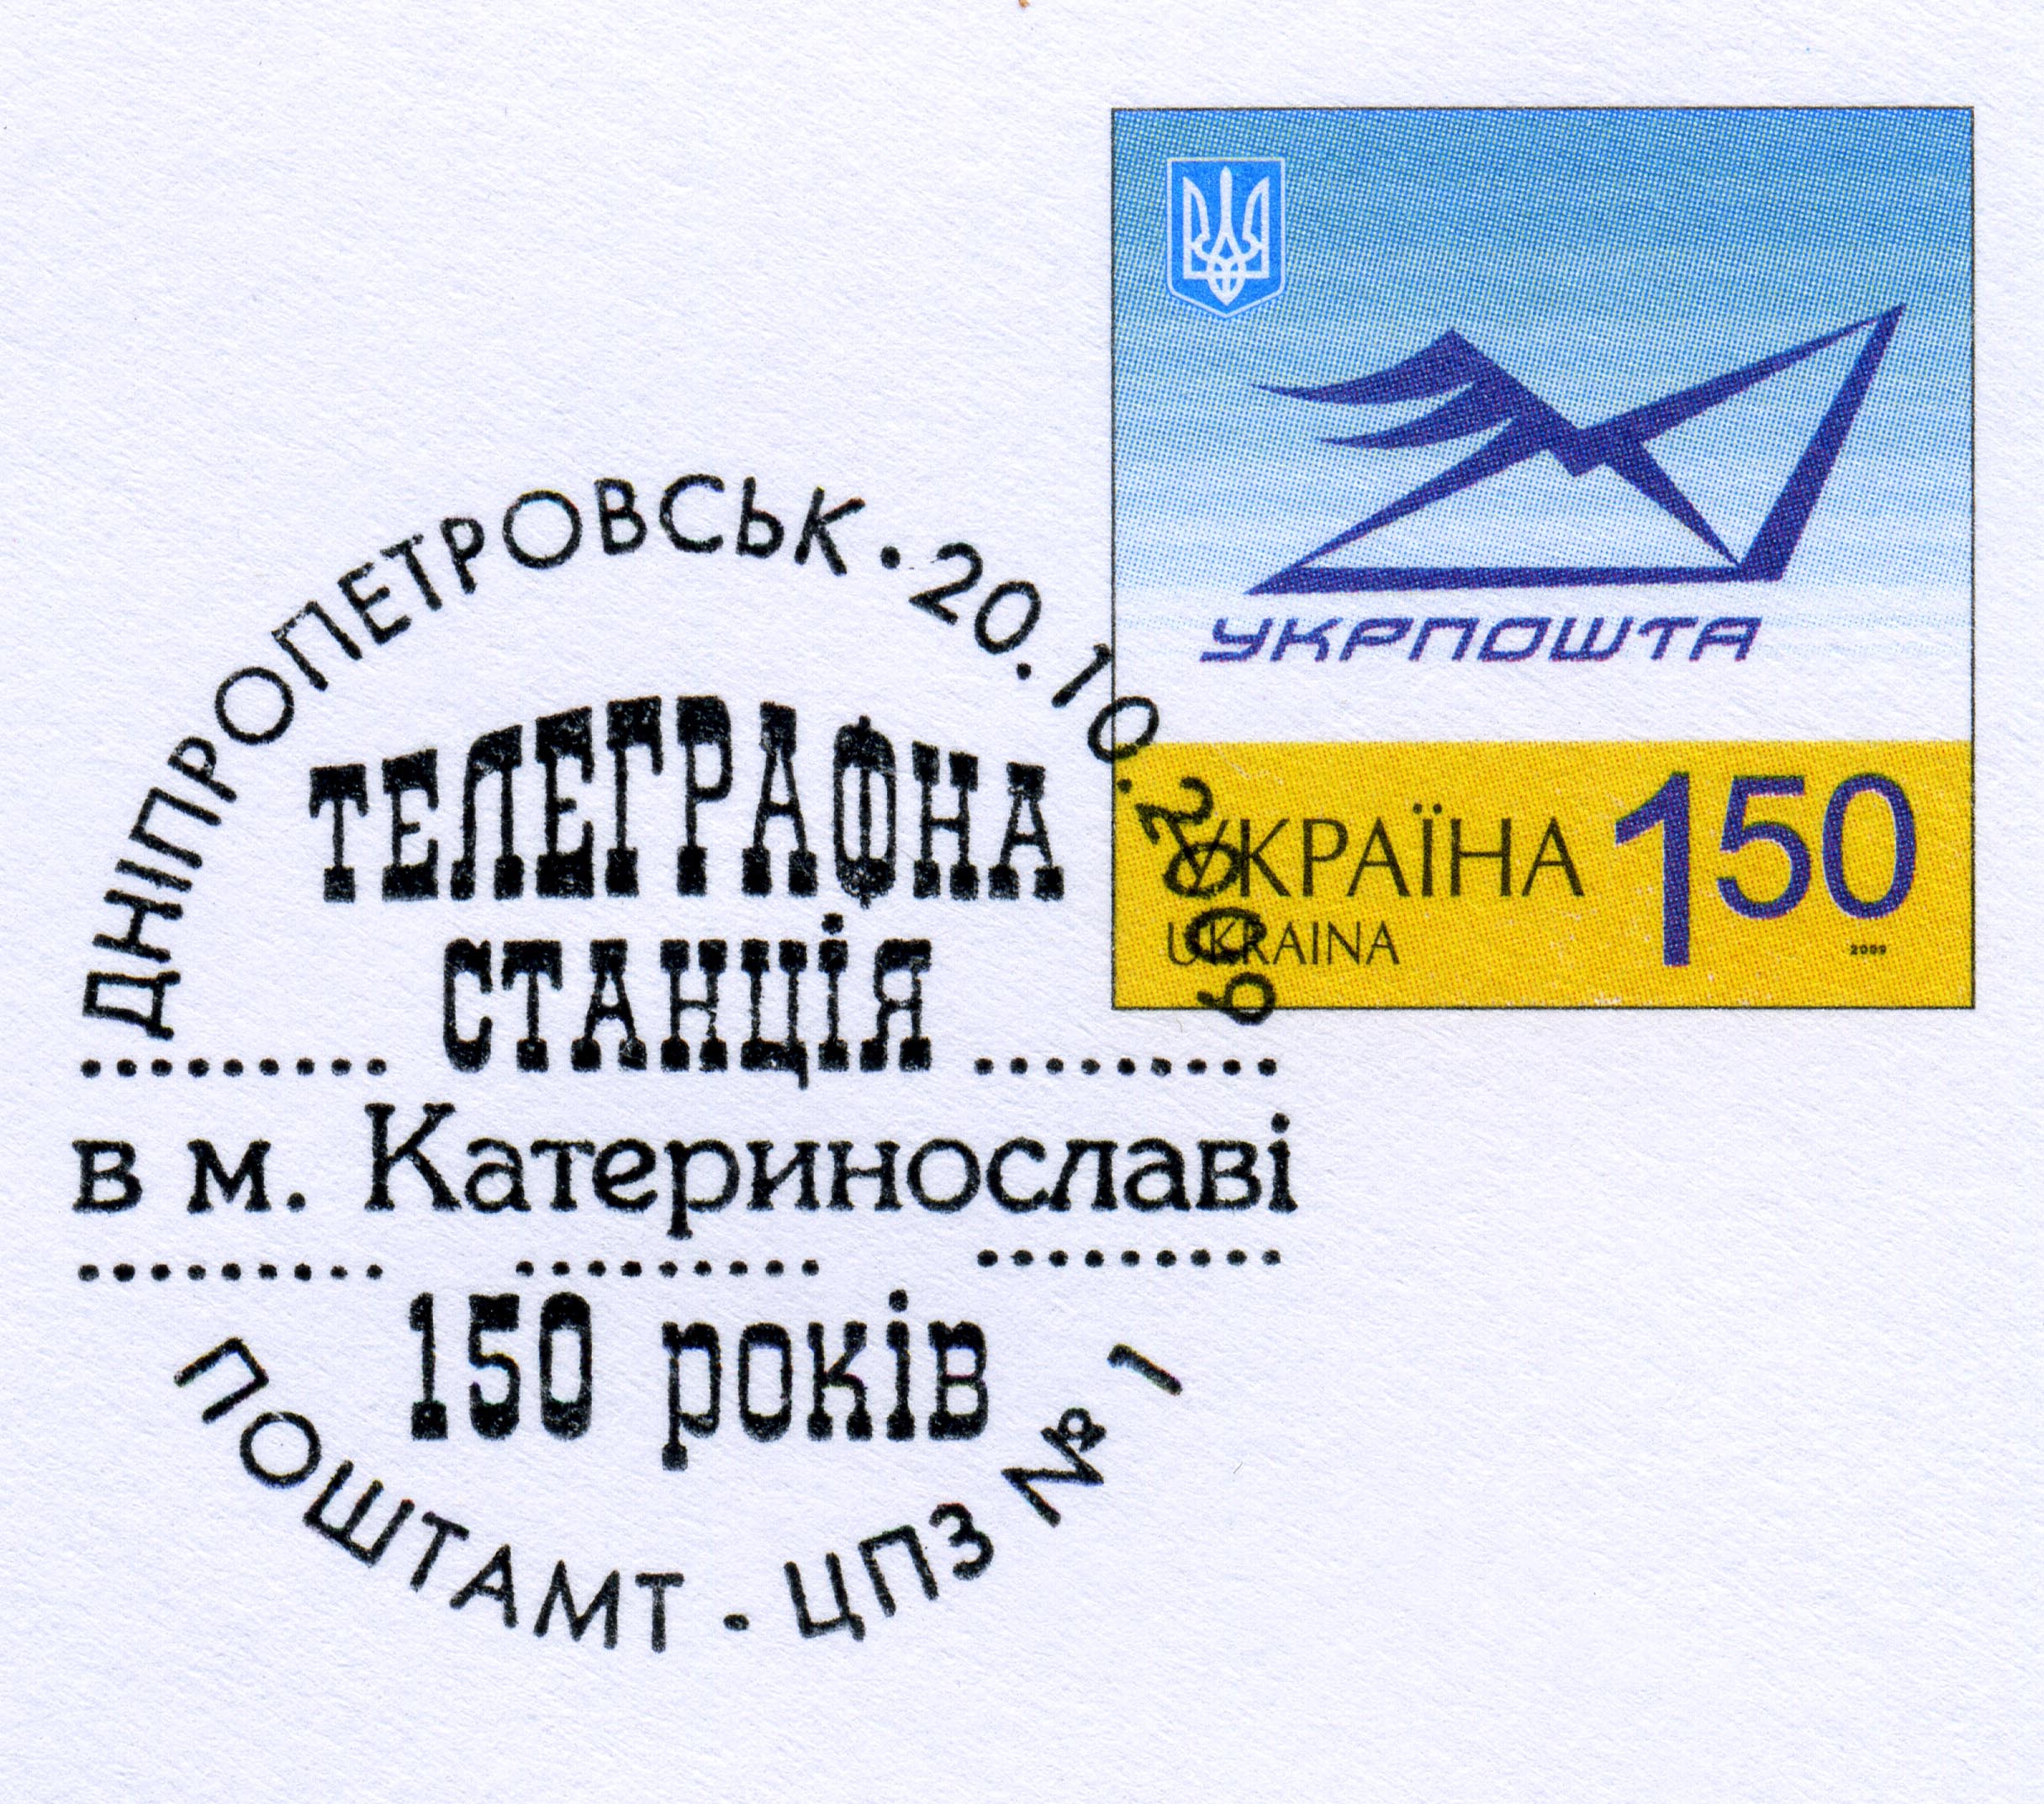 2009. 150 лет телеграфной станции в Екатеринославе